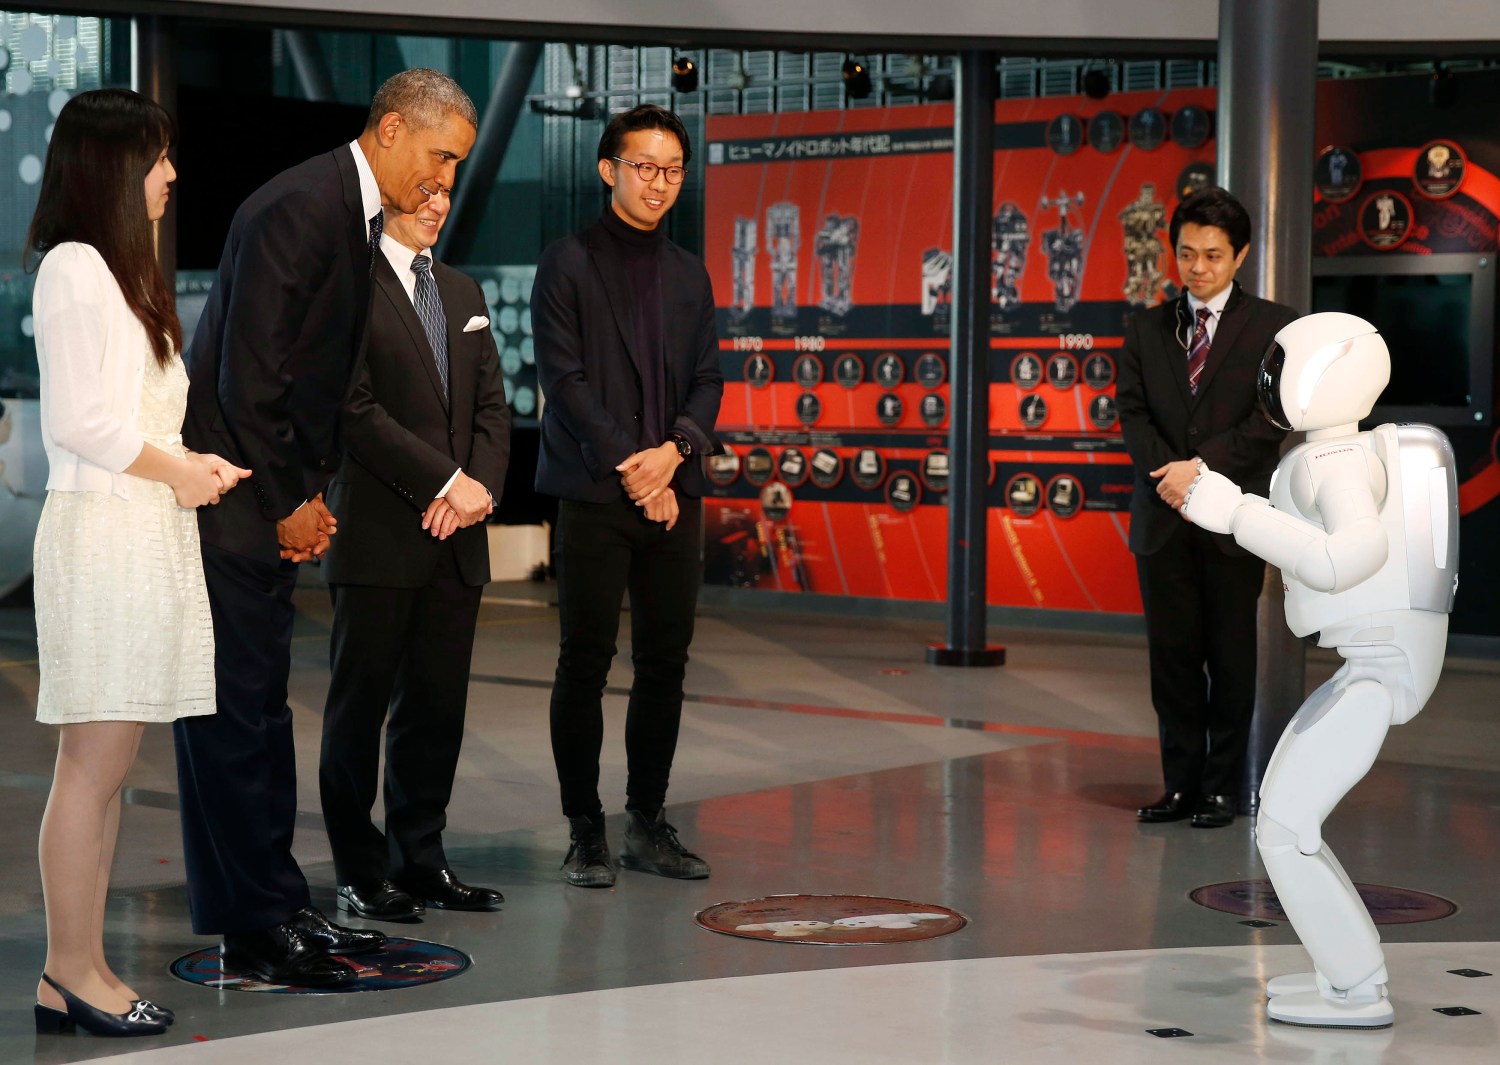 President Obama with "Asimo" the robot